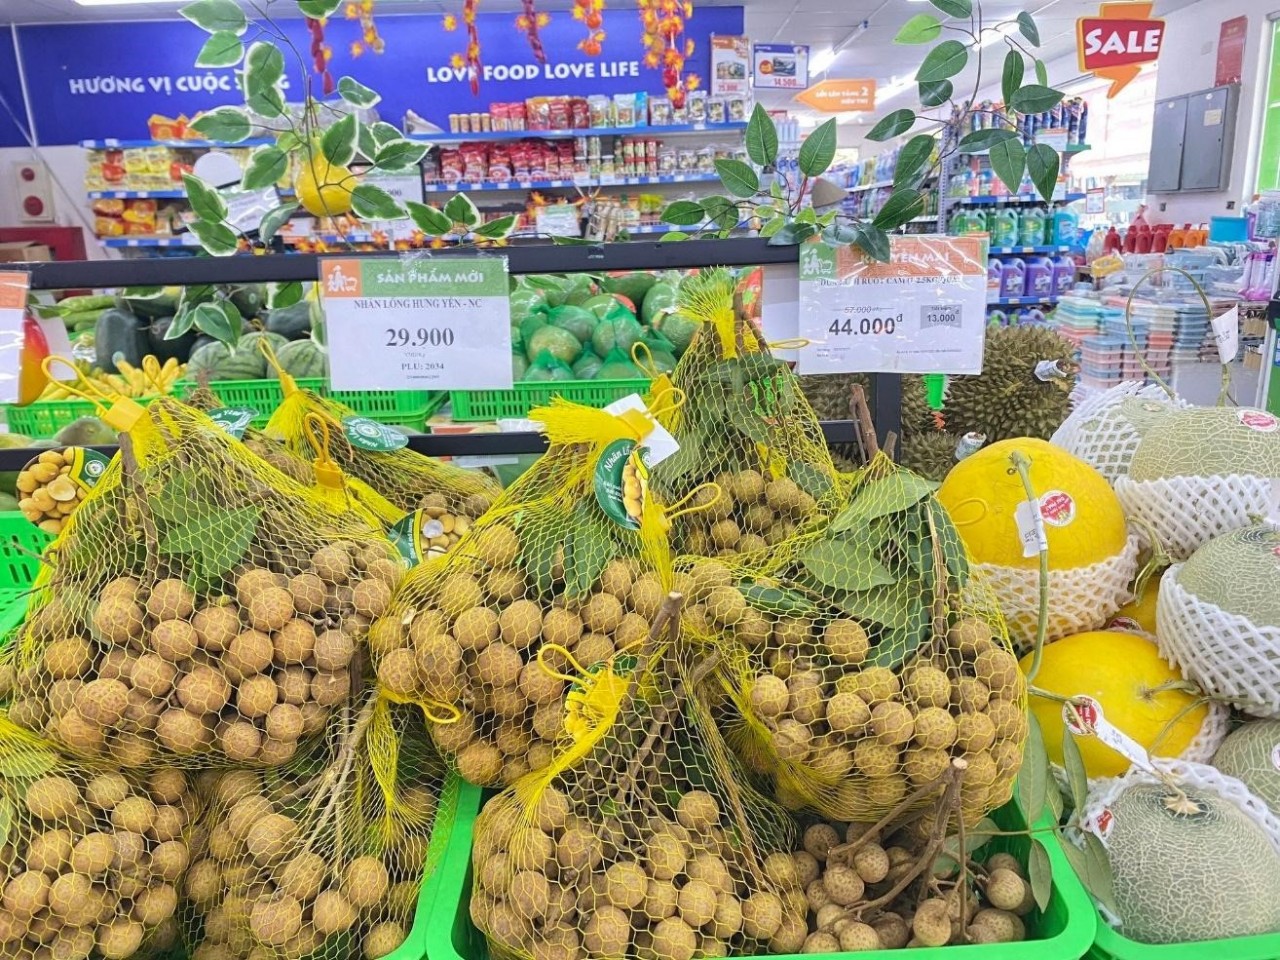 Đặc sản Nhãn Lồng Hưng Yên được bày bán tại siêu thị BRGMart.